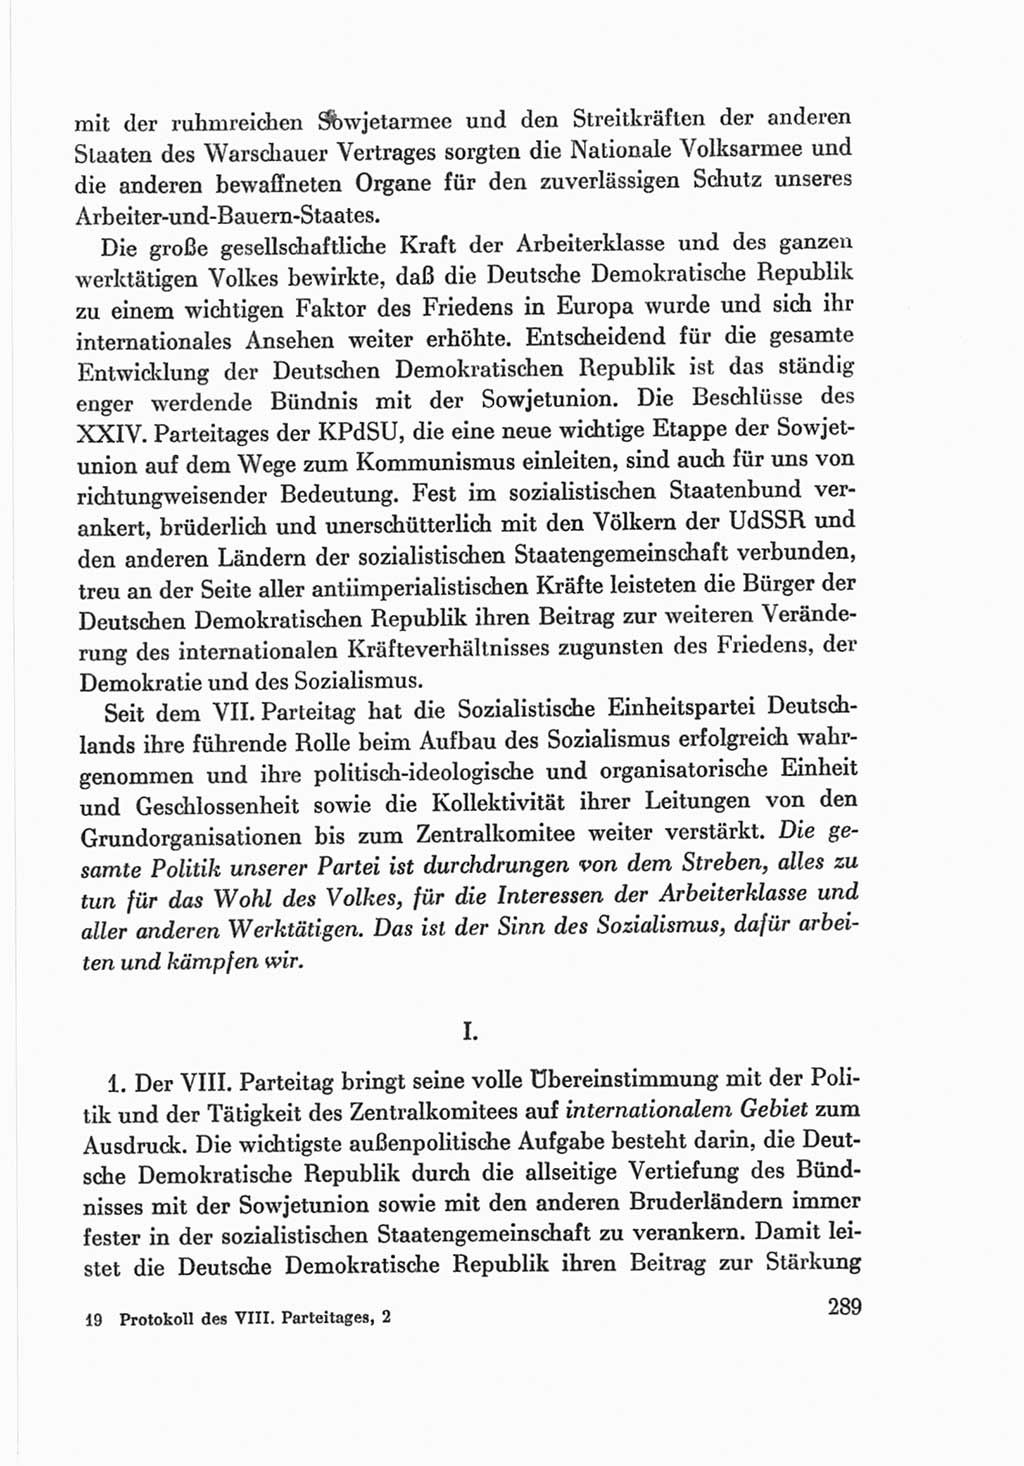 Protokoll der Verhandlungen des Ⅷ. Parteitages der Sozialistischen Einheitspartei Deutschlands (SED) [Deutsche Demokratische Republik (DDR)] 1971, Band 2, Seite 289 (Prot. Verh. Ⅷ. PT SED DDR 1971, Bd. 2, S. 289)